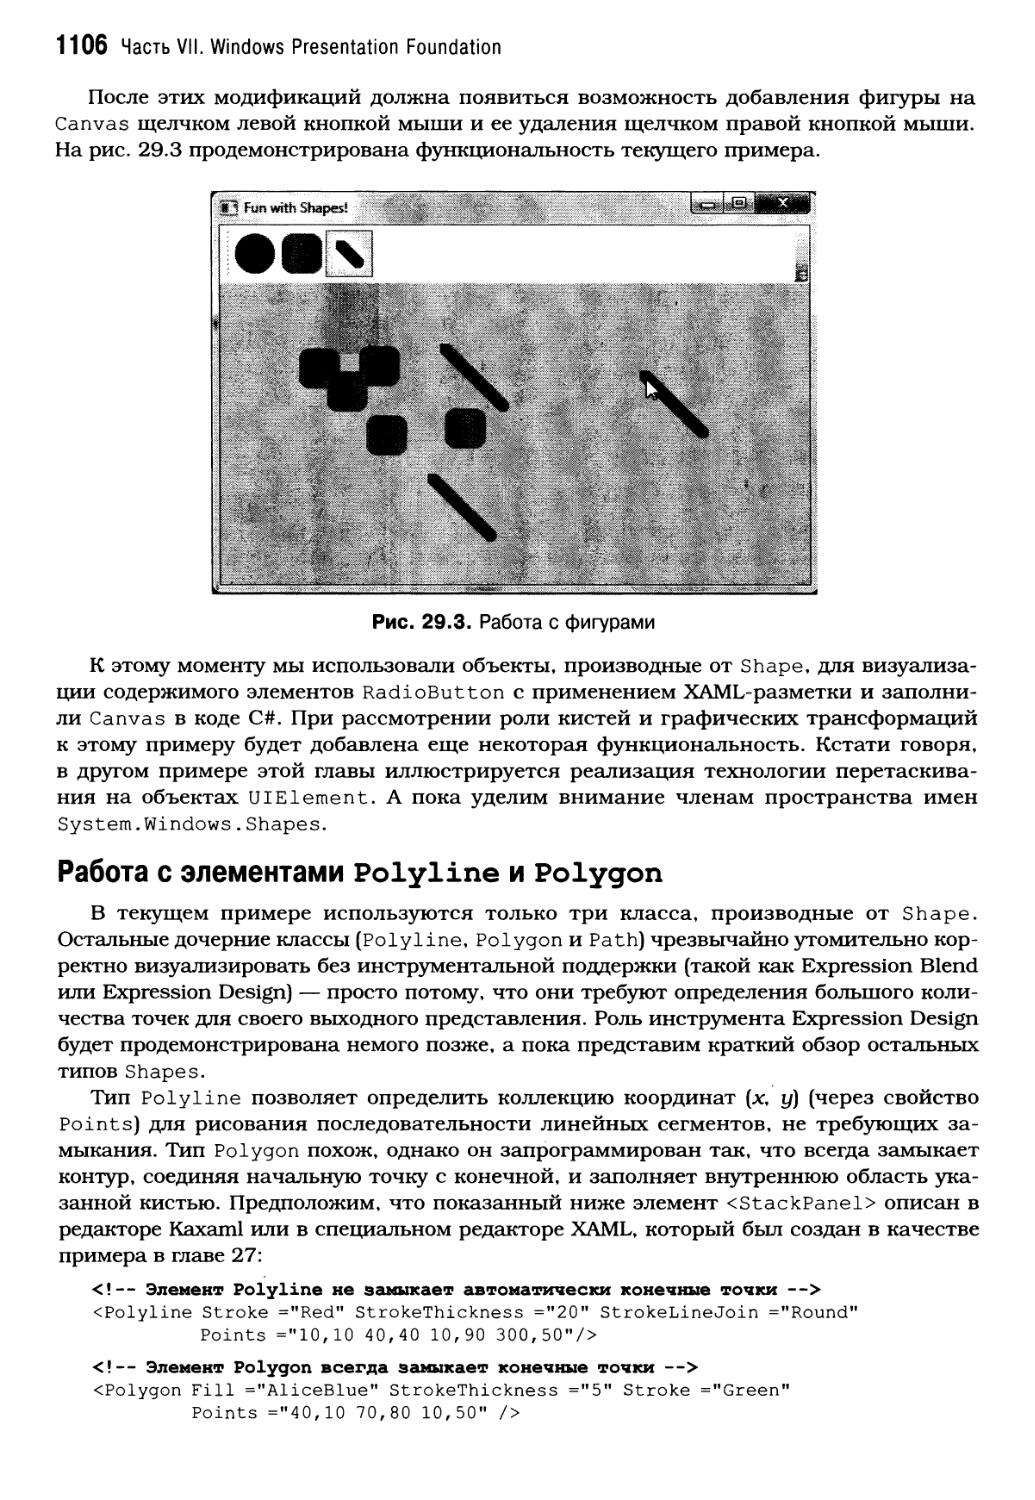 Работа с элементами Polyline и Polygon